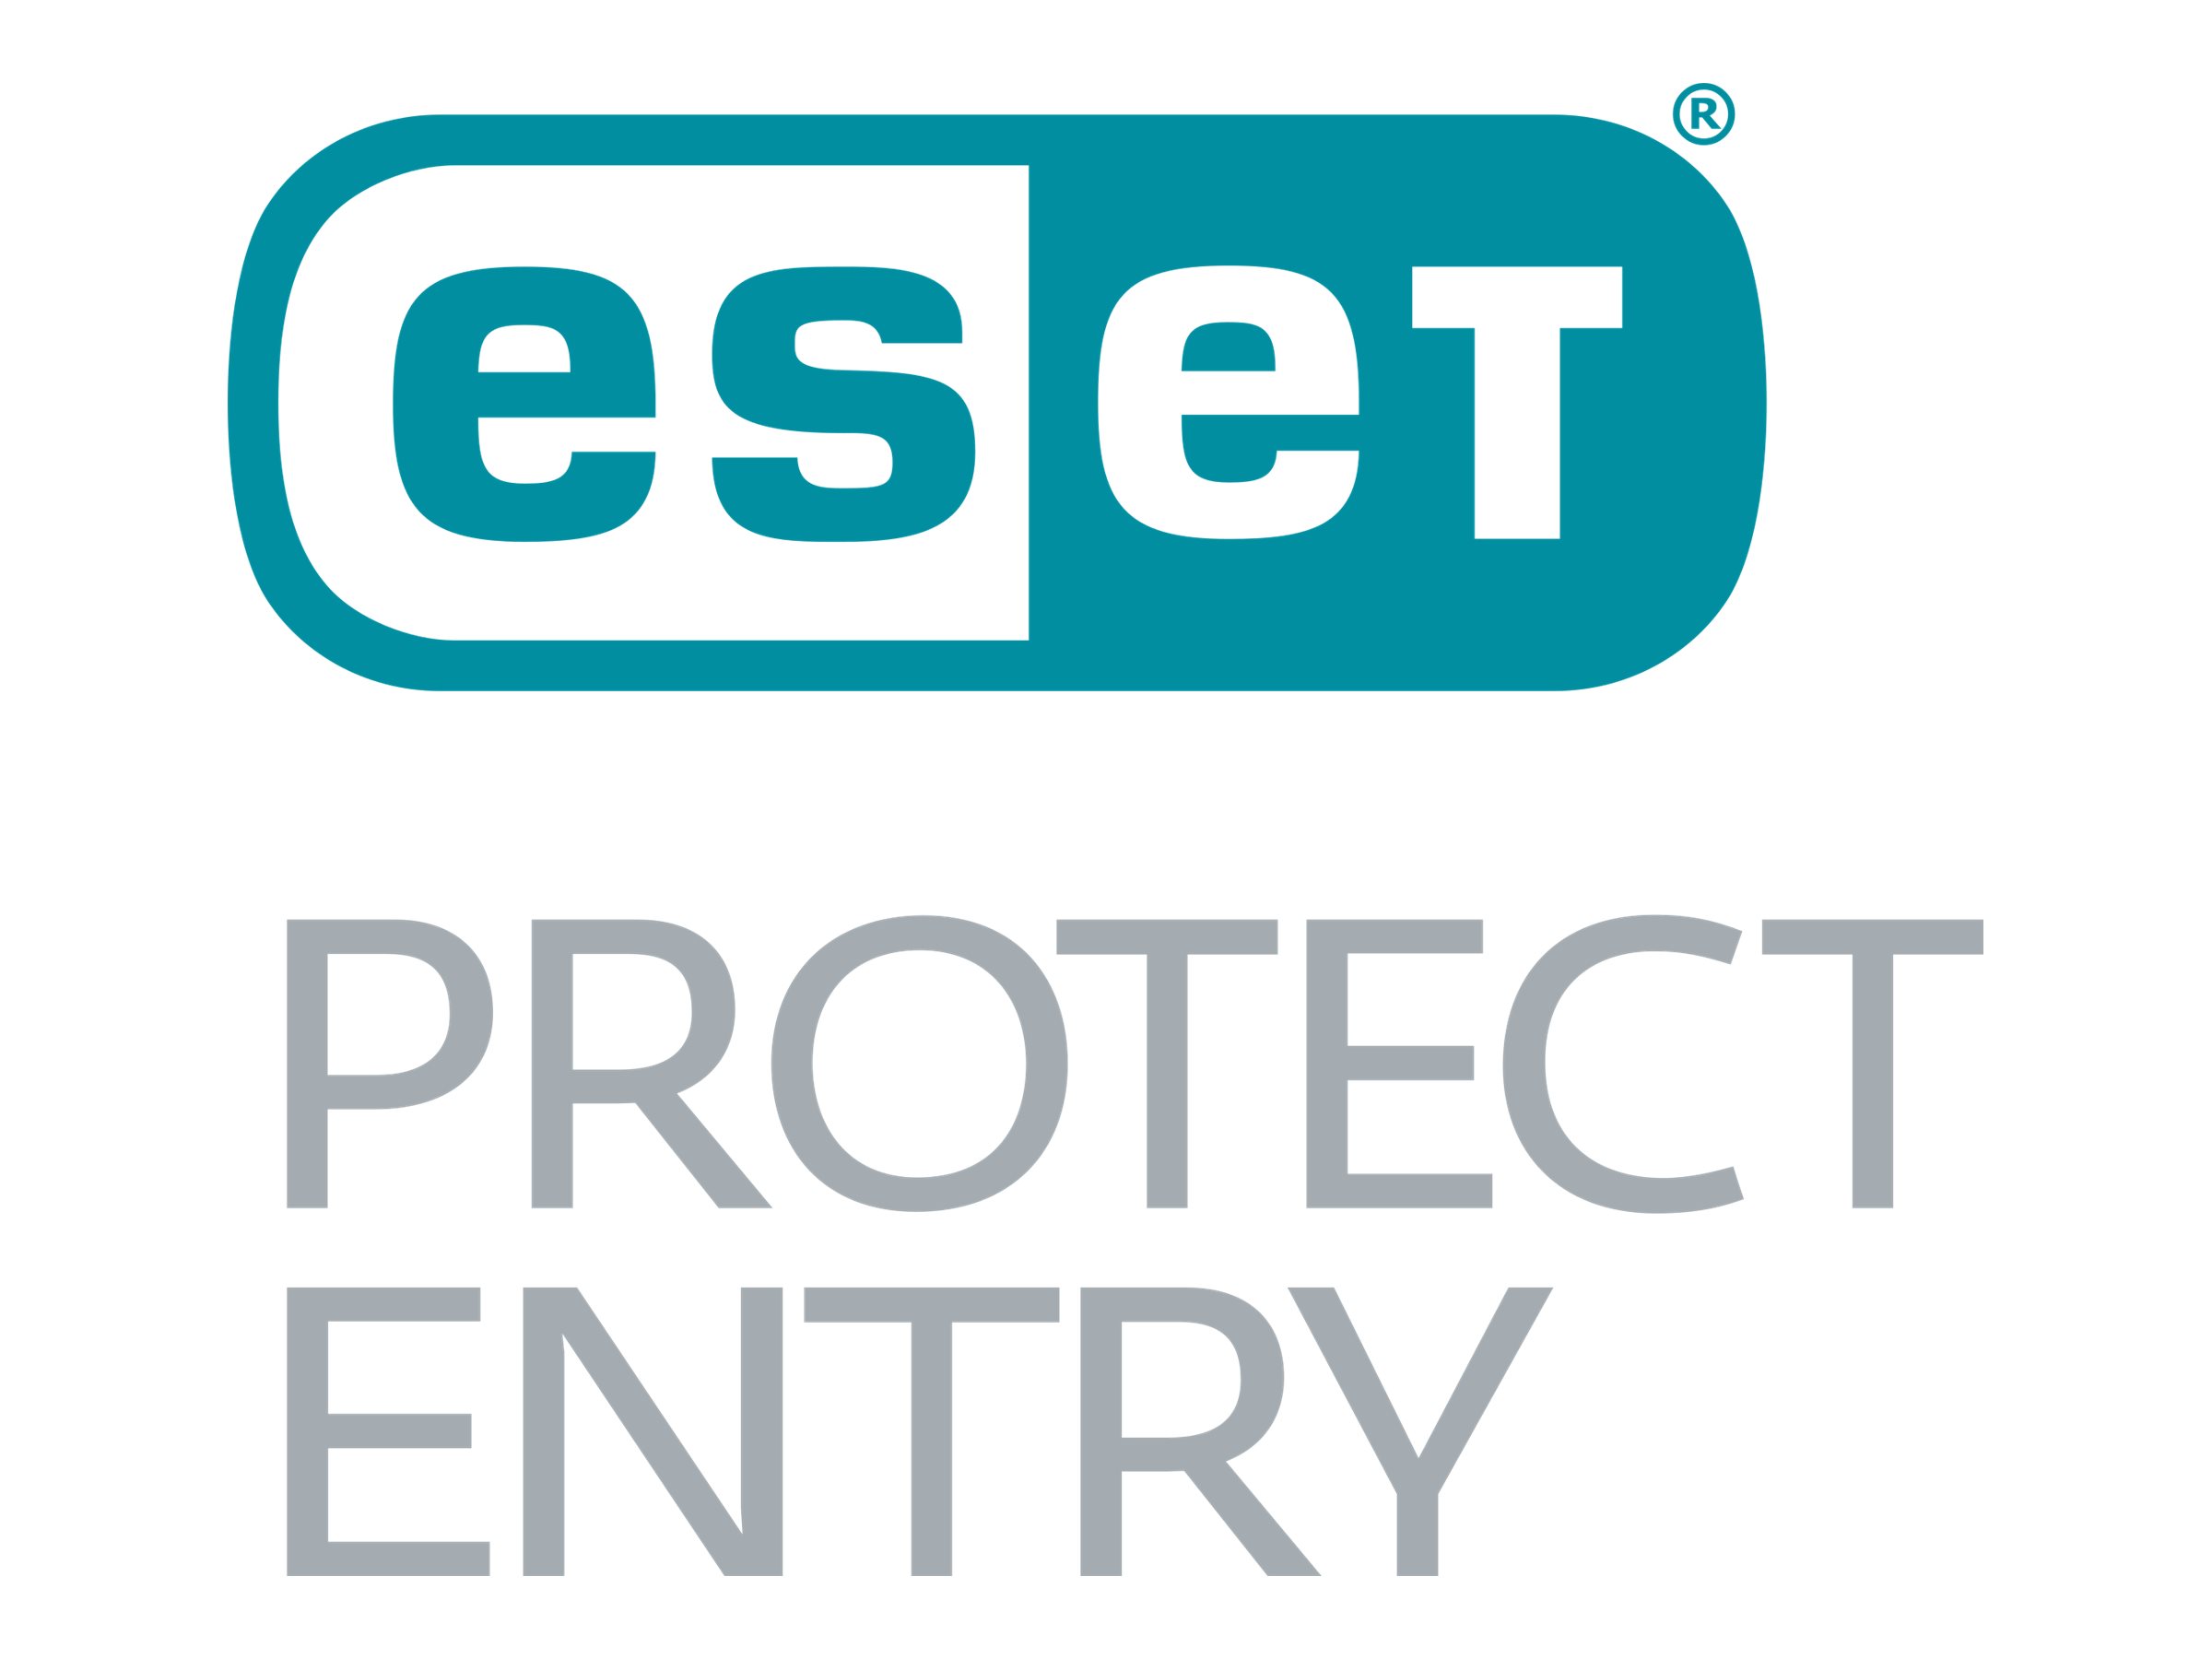 ESET PROTECT Entry (ESET Endpoint Protection Advanced Cloud) Verlängerung der Aktualisierungsgarantie um 3 Jahre bei gültiger Lizenz (6 Devices)